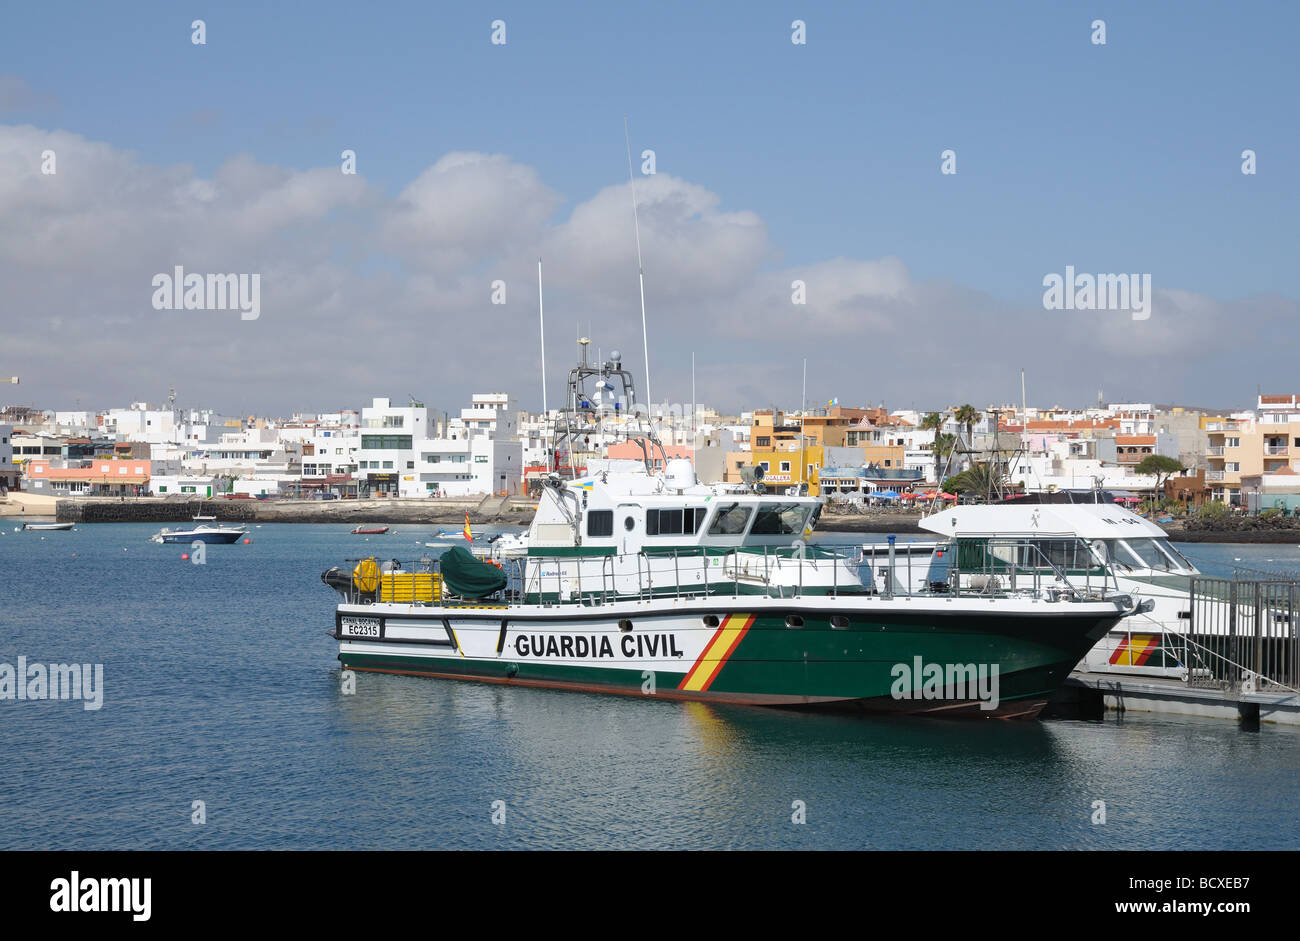 Guardia Civil boat in the harbor of Corralejo, Fuerteventura Stock Photo